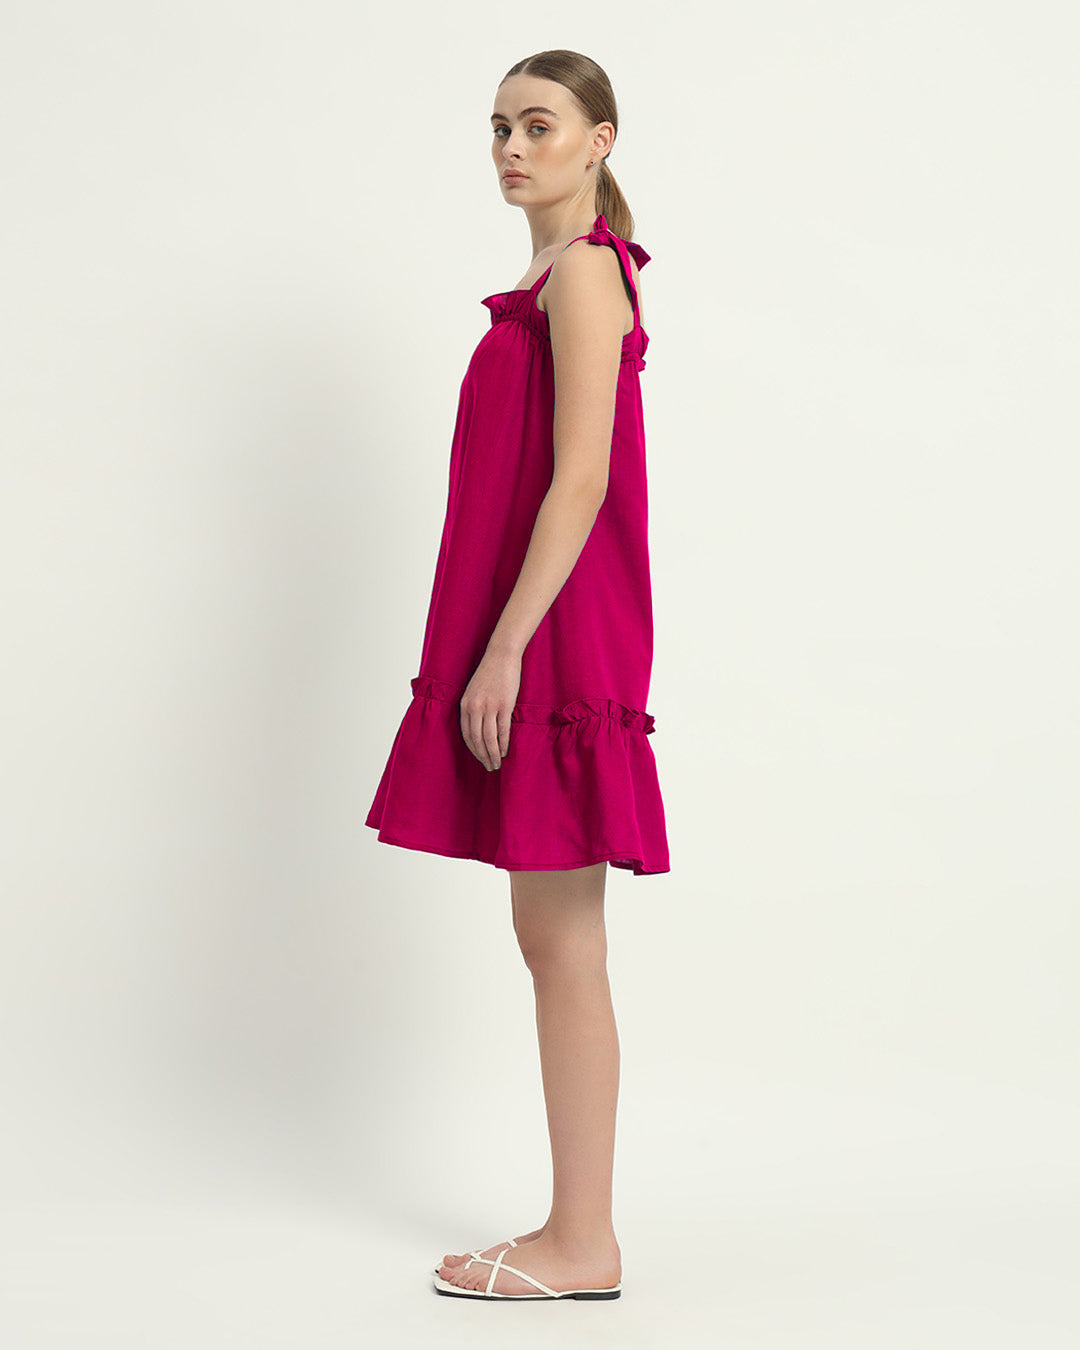 The Berry Amalfi Cotton Dress